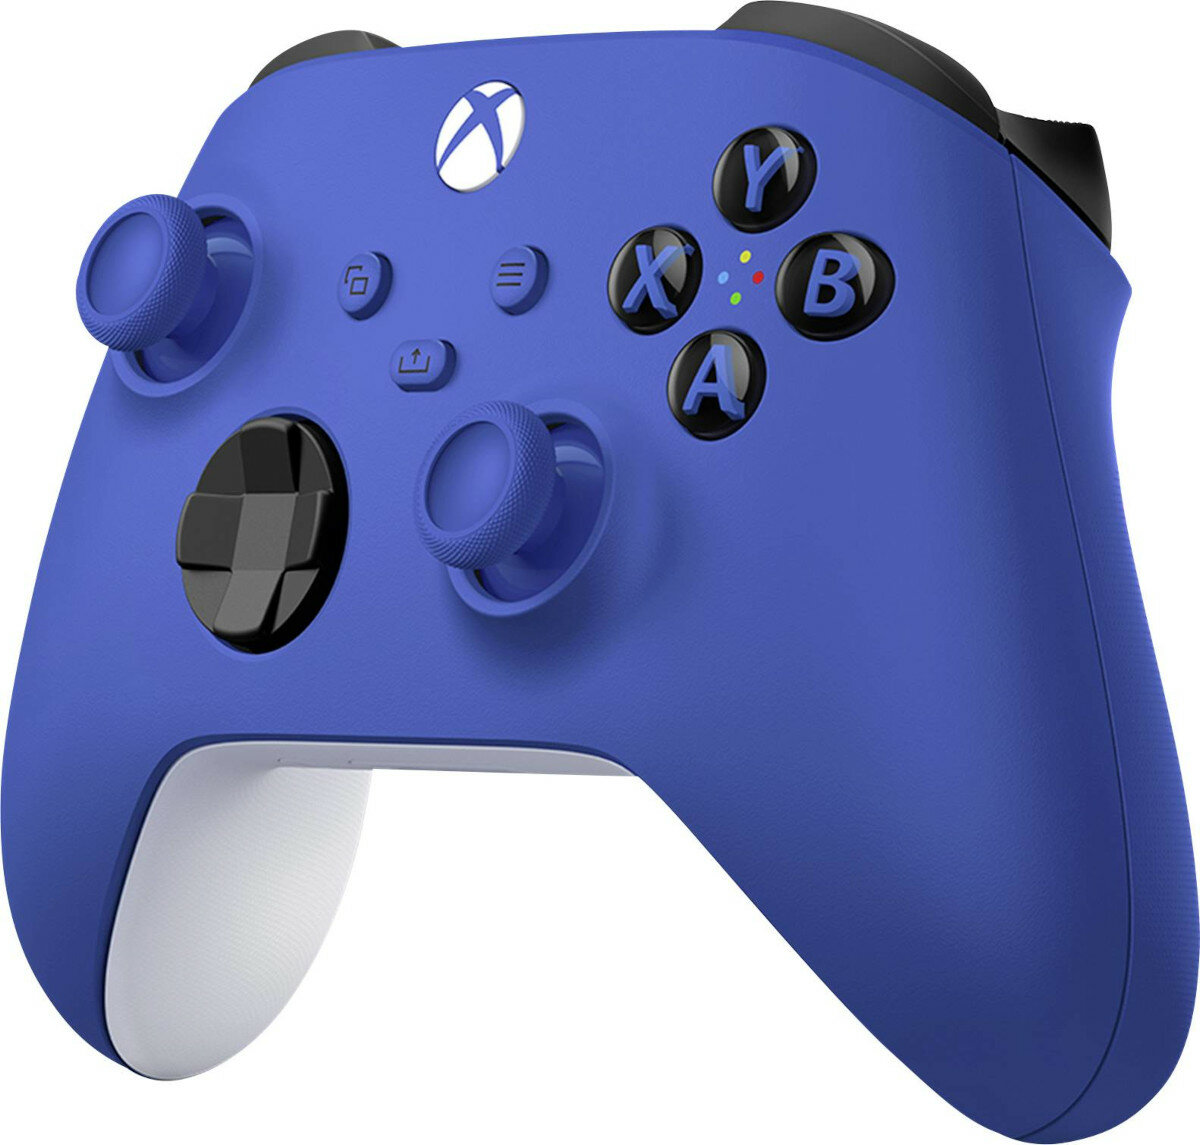 Kontroler bezprzewodowy Microsoft Xbox Series X/S/One niebieski pokazany prawy skos kontrolera